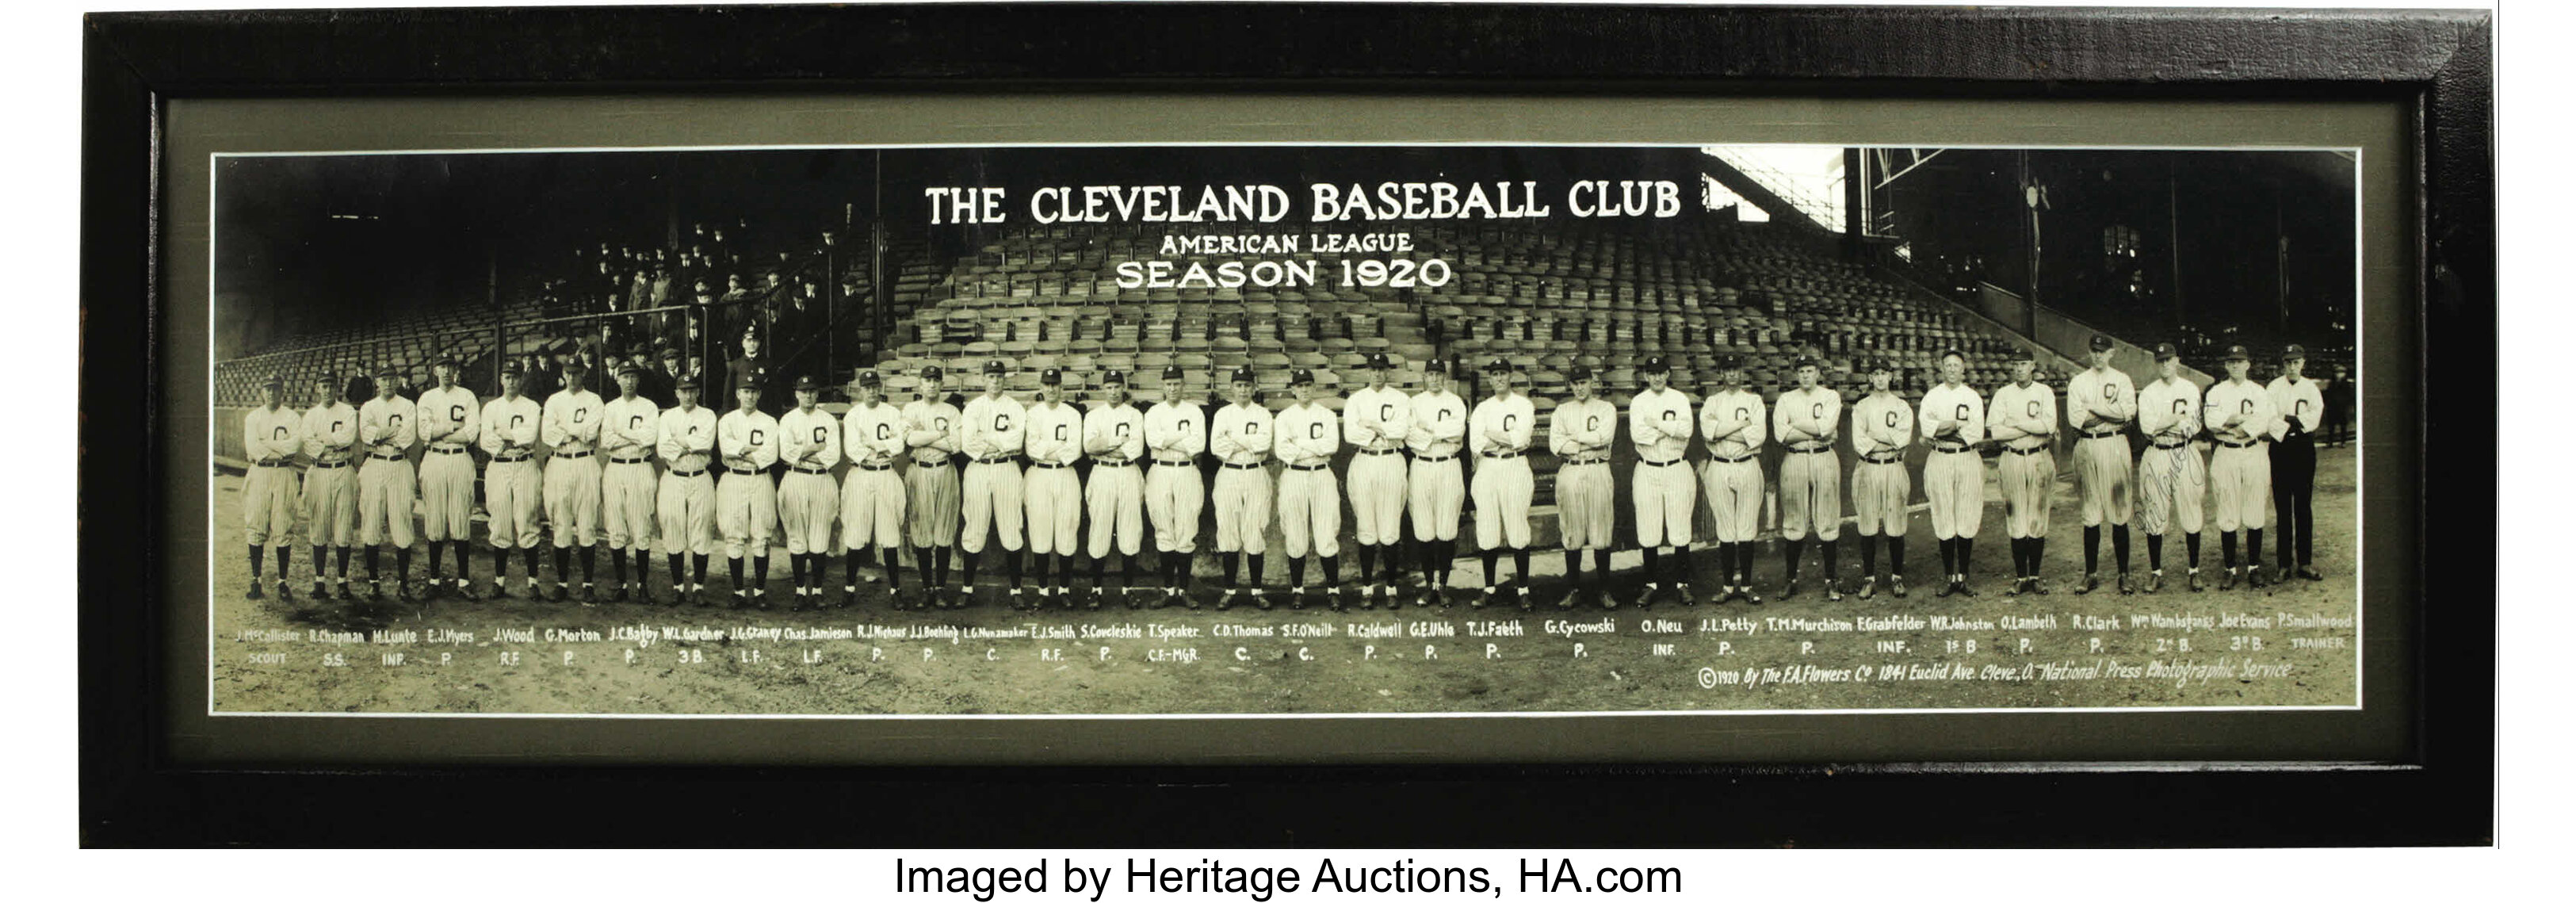 Baseball History: 1920 Cleveland Indians